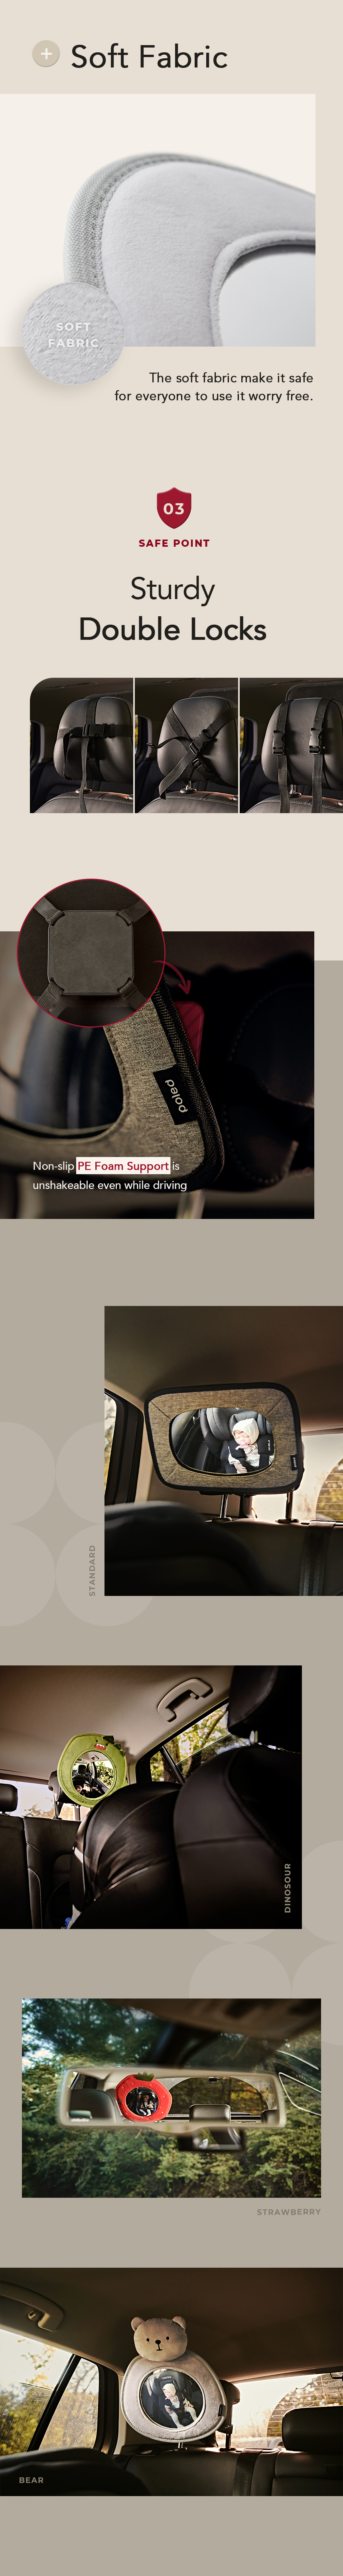 poled backseat mirror designs